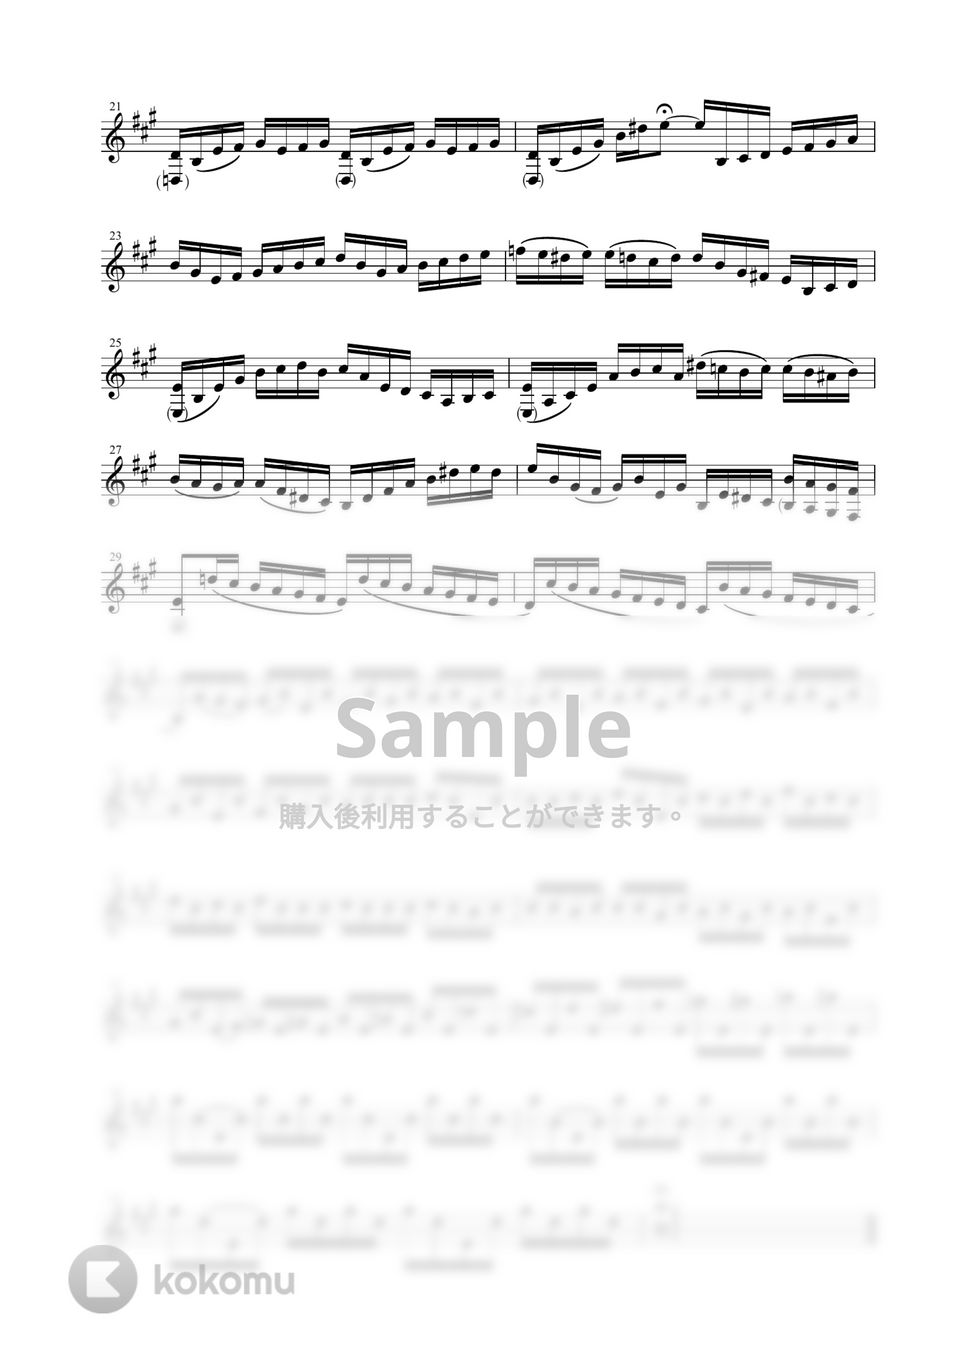 J.S.バッハ - チェロ組曲 より 第１番 プレリュード BWV1007 (クラリネット独奏 in Bb / 無伴奏) by Zoe